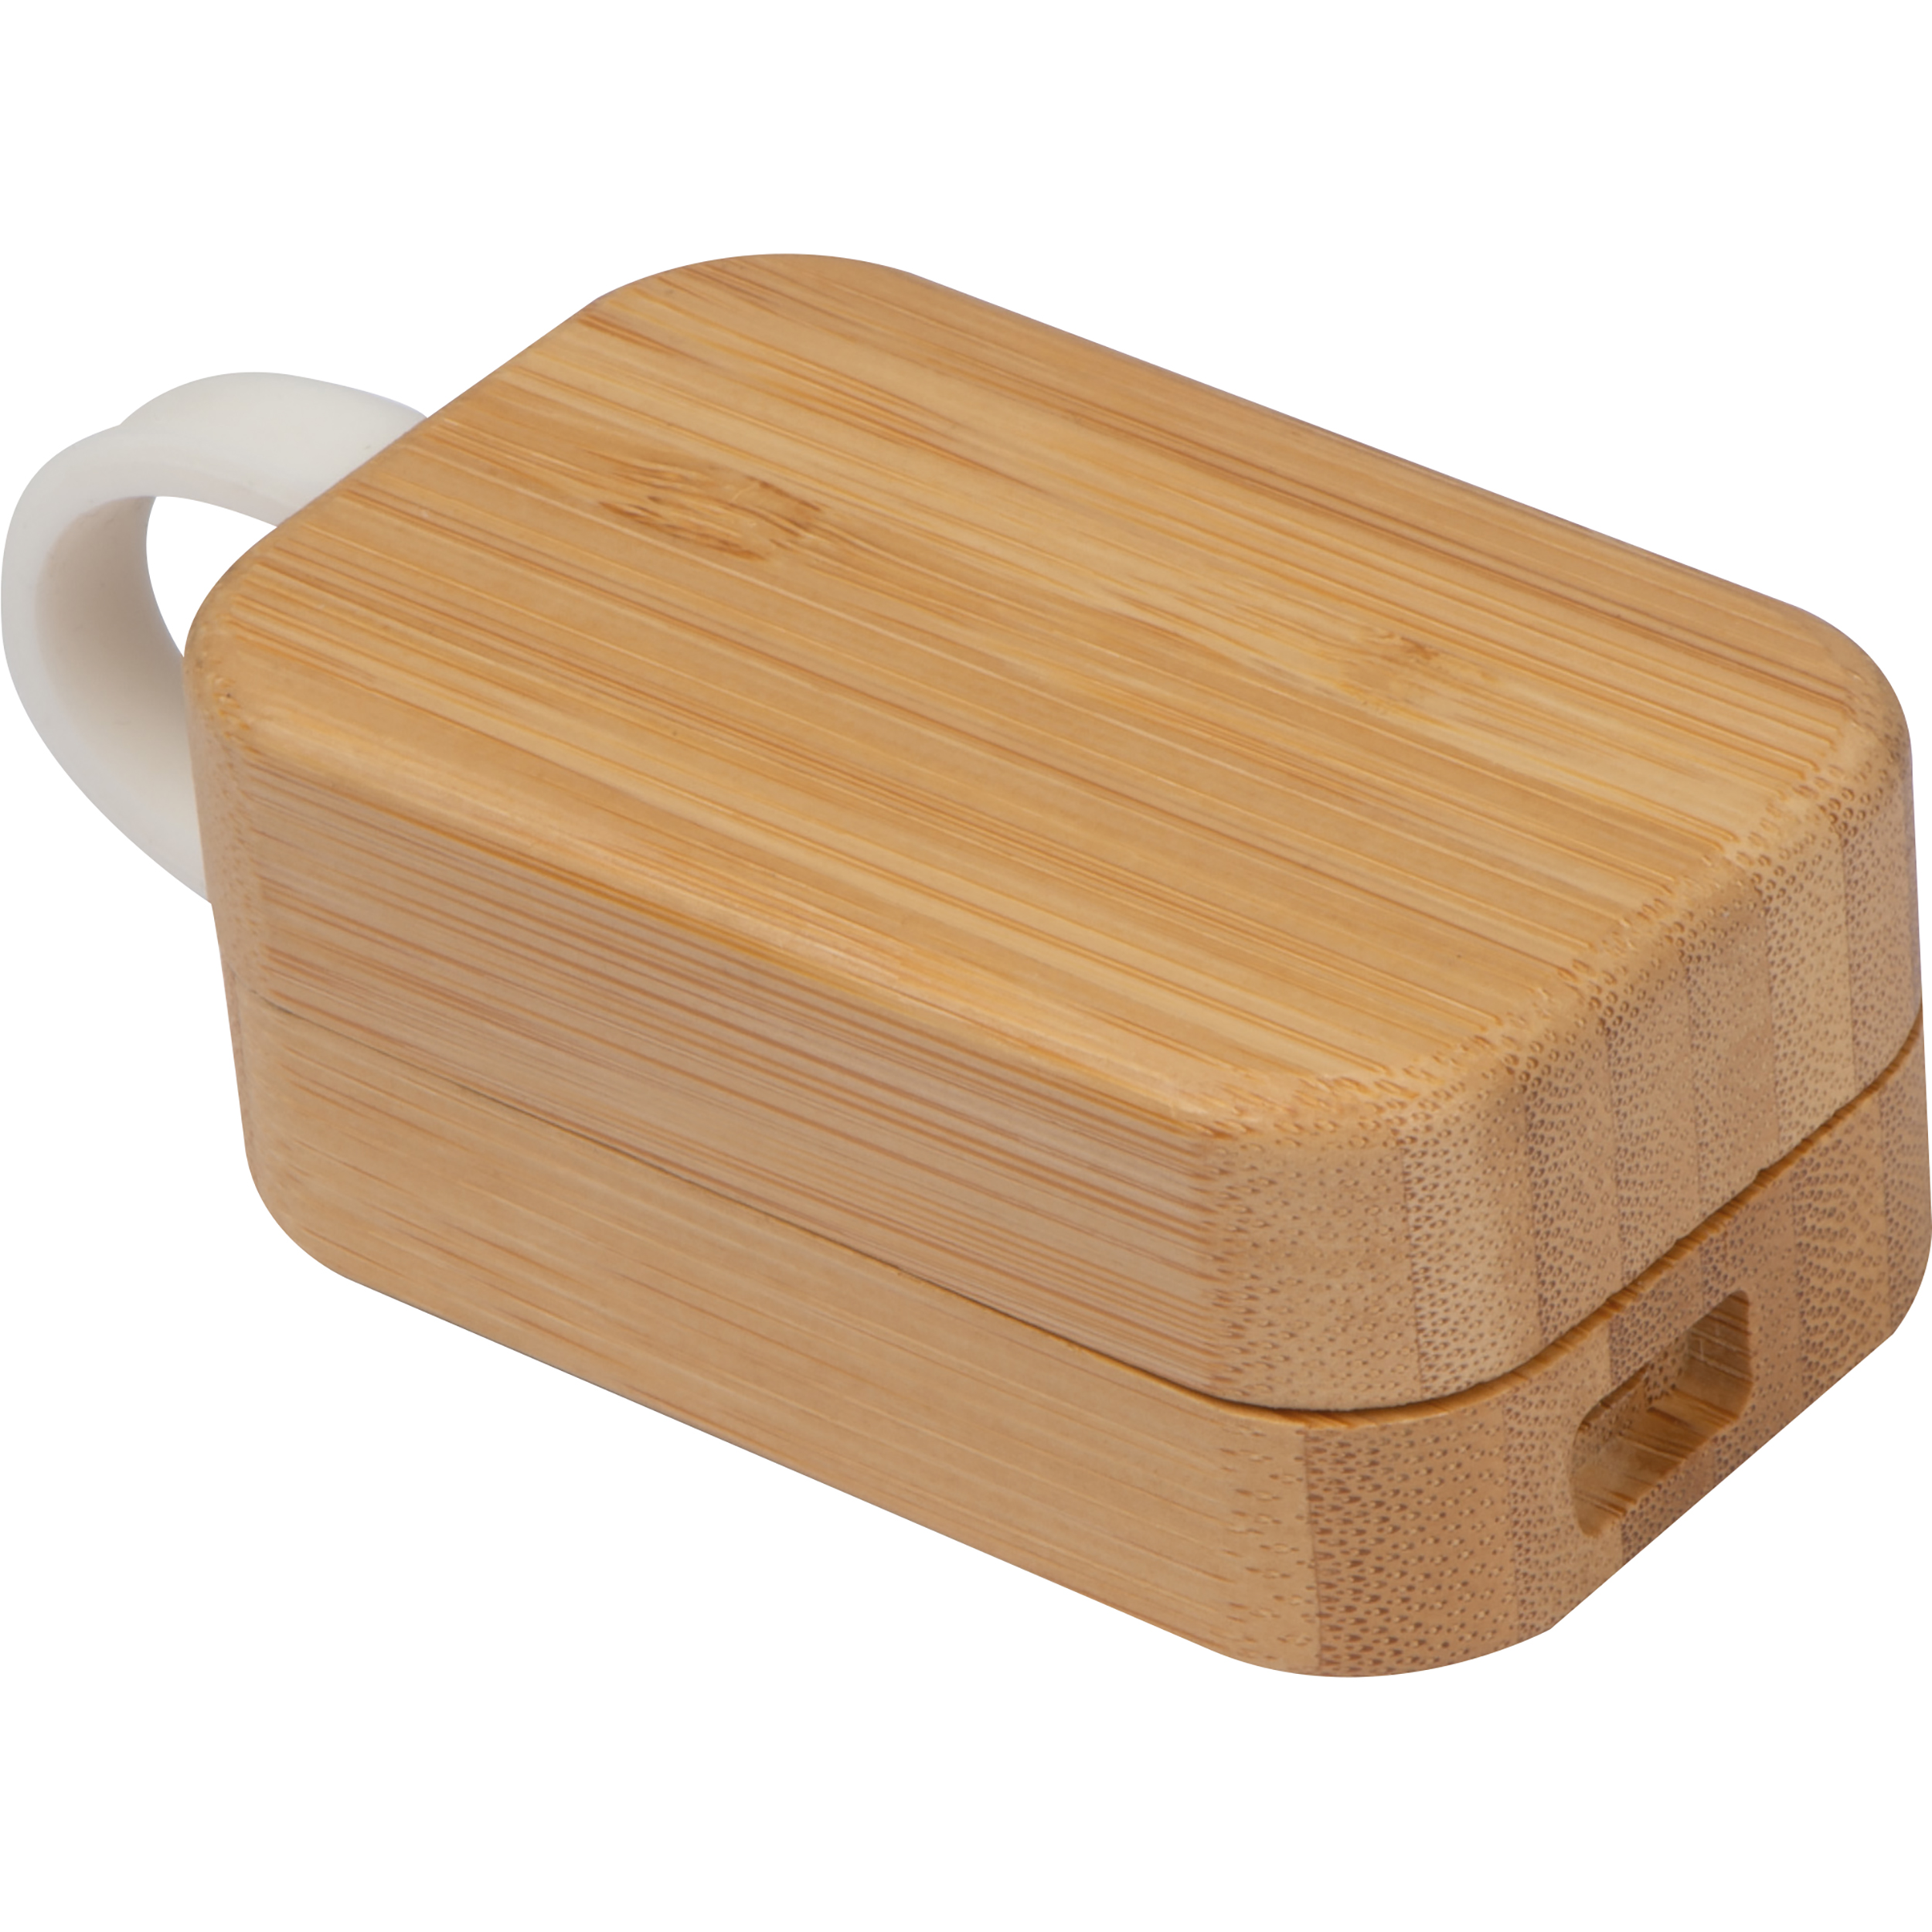 Auriculares in-ear con una caja de bambú